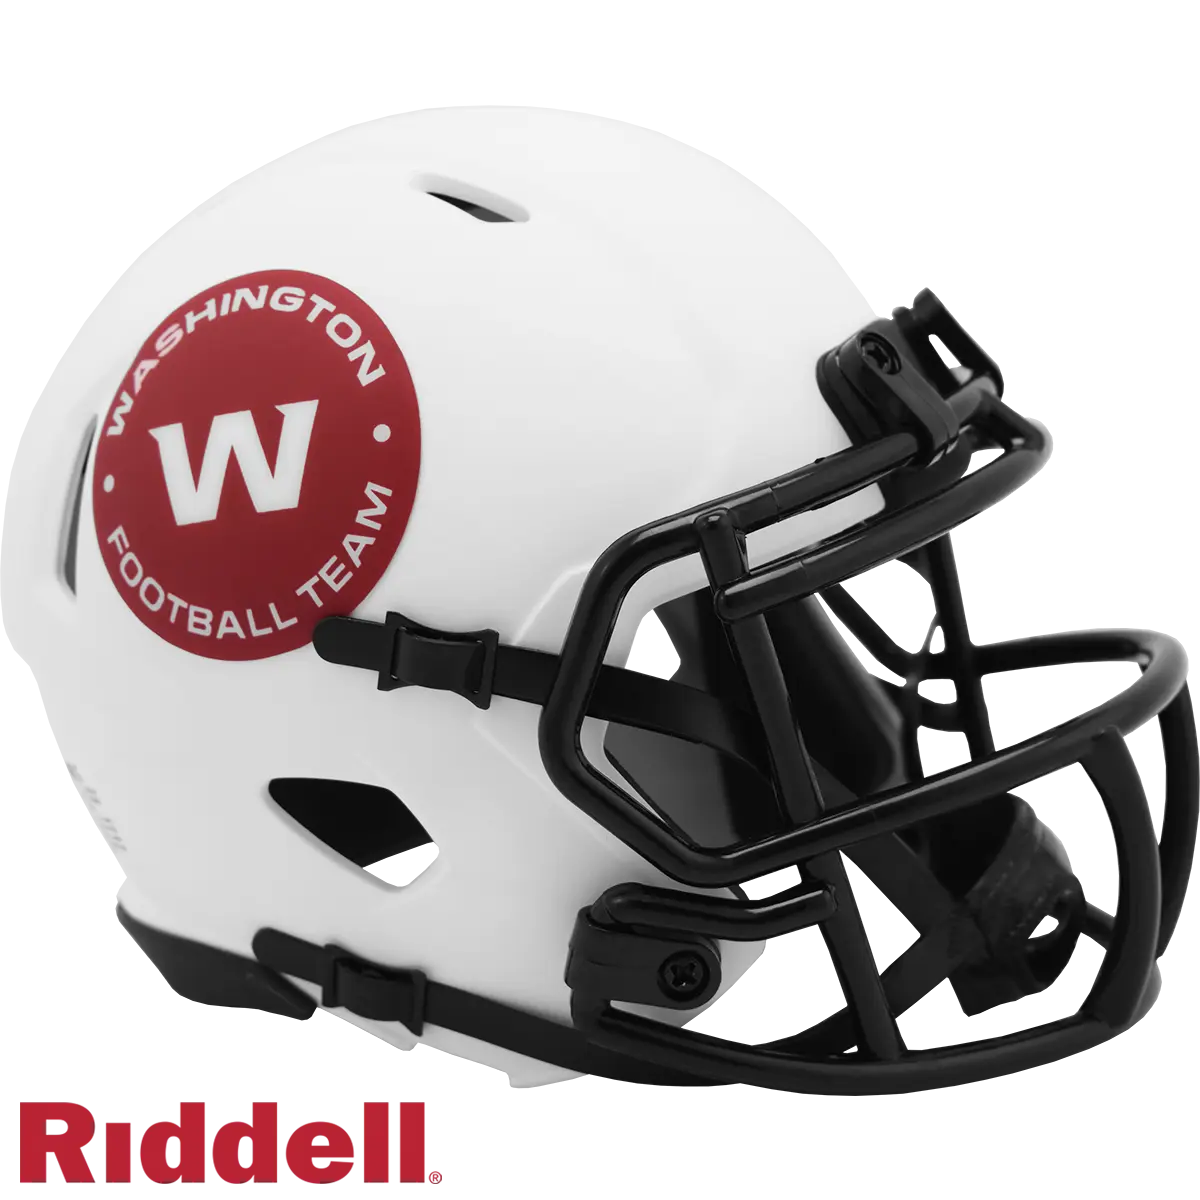 new washington football team helmet